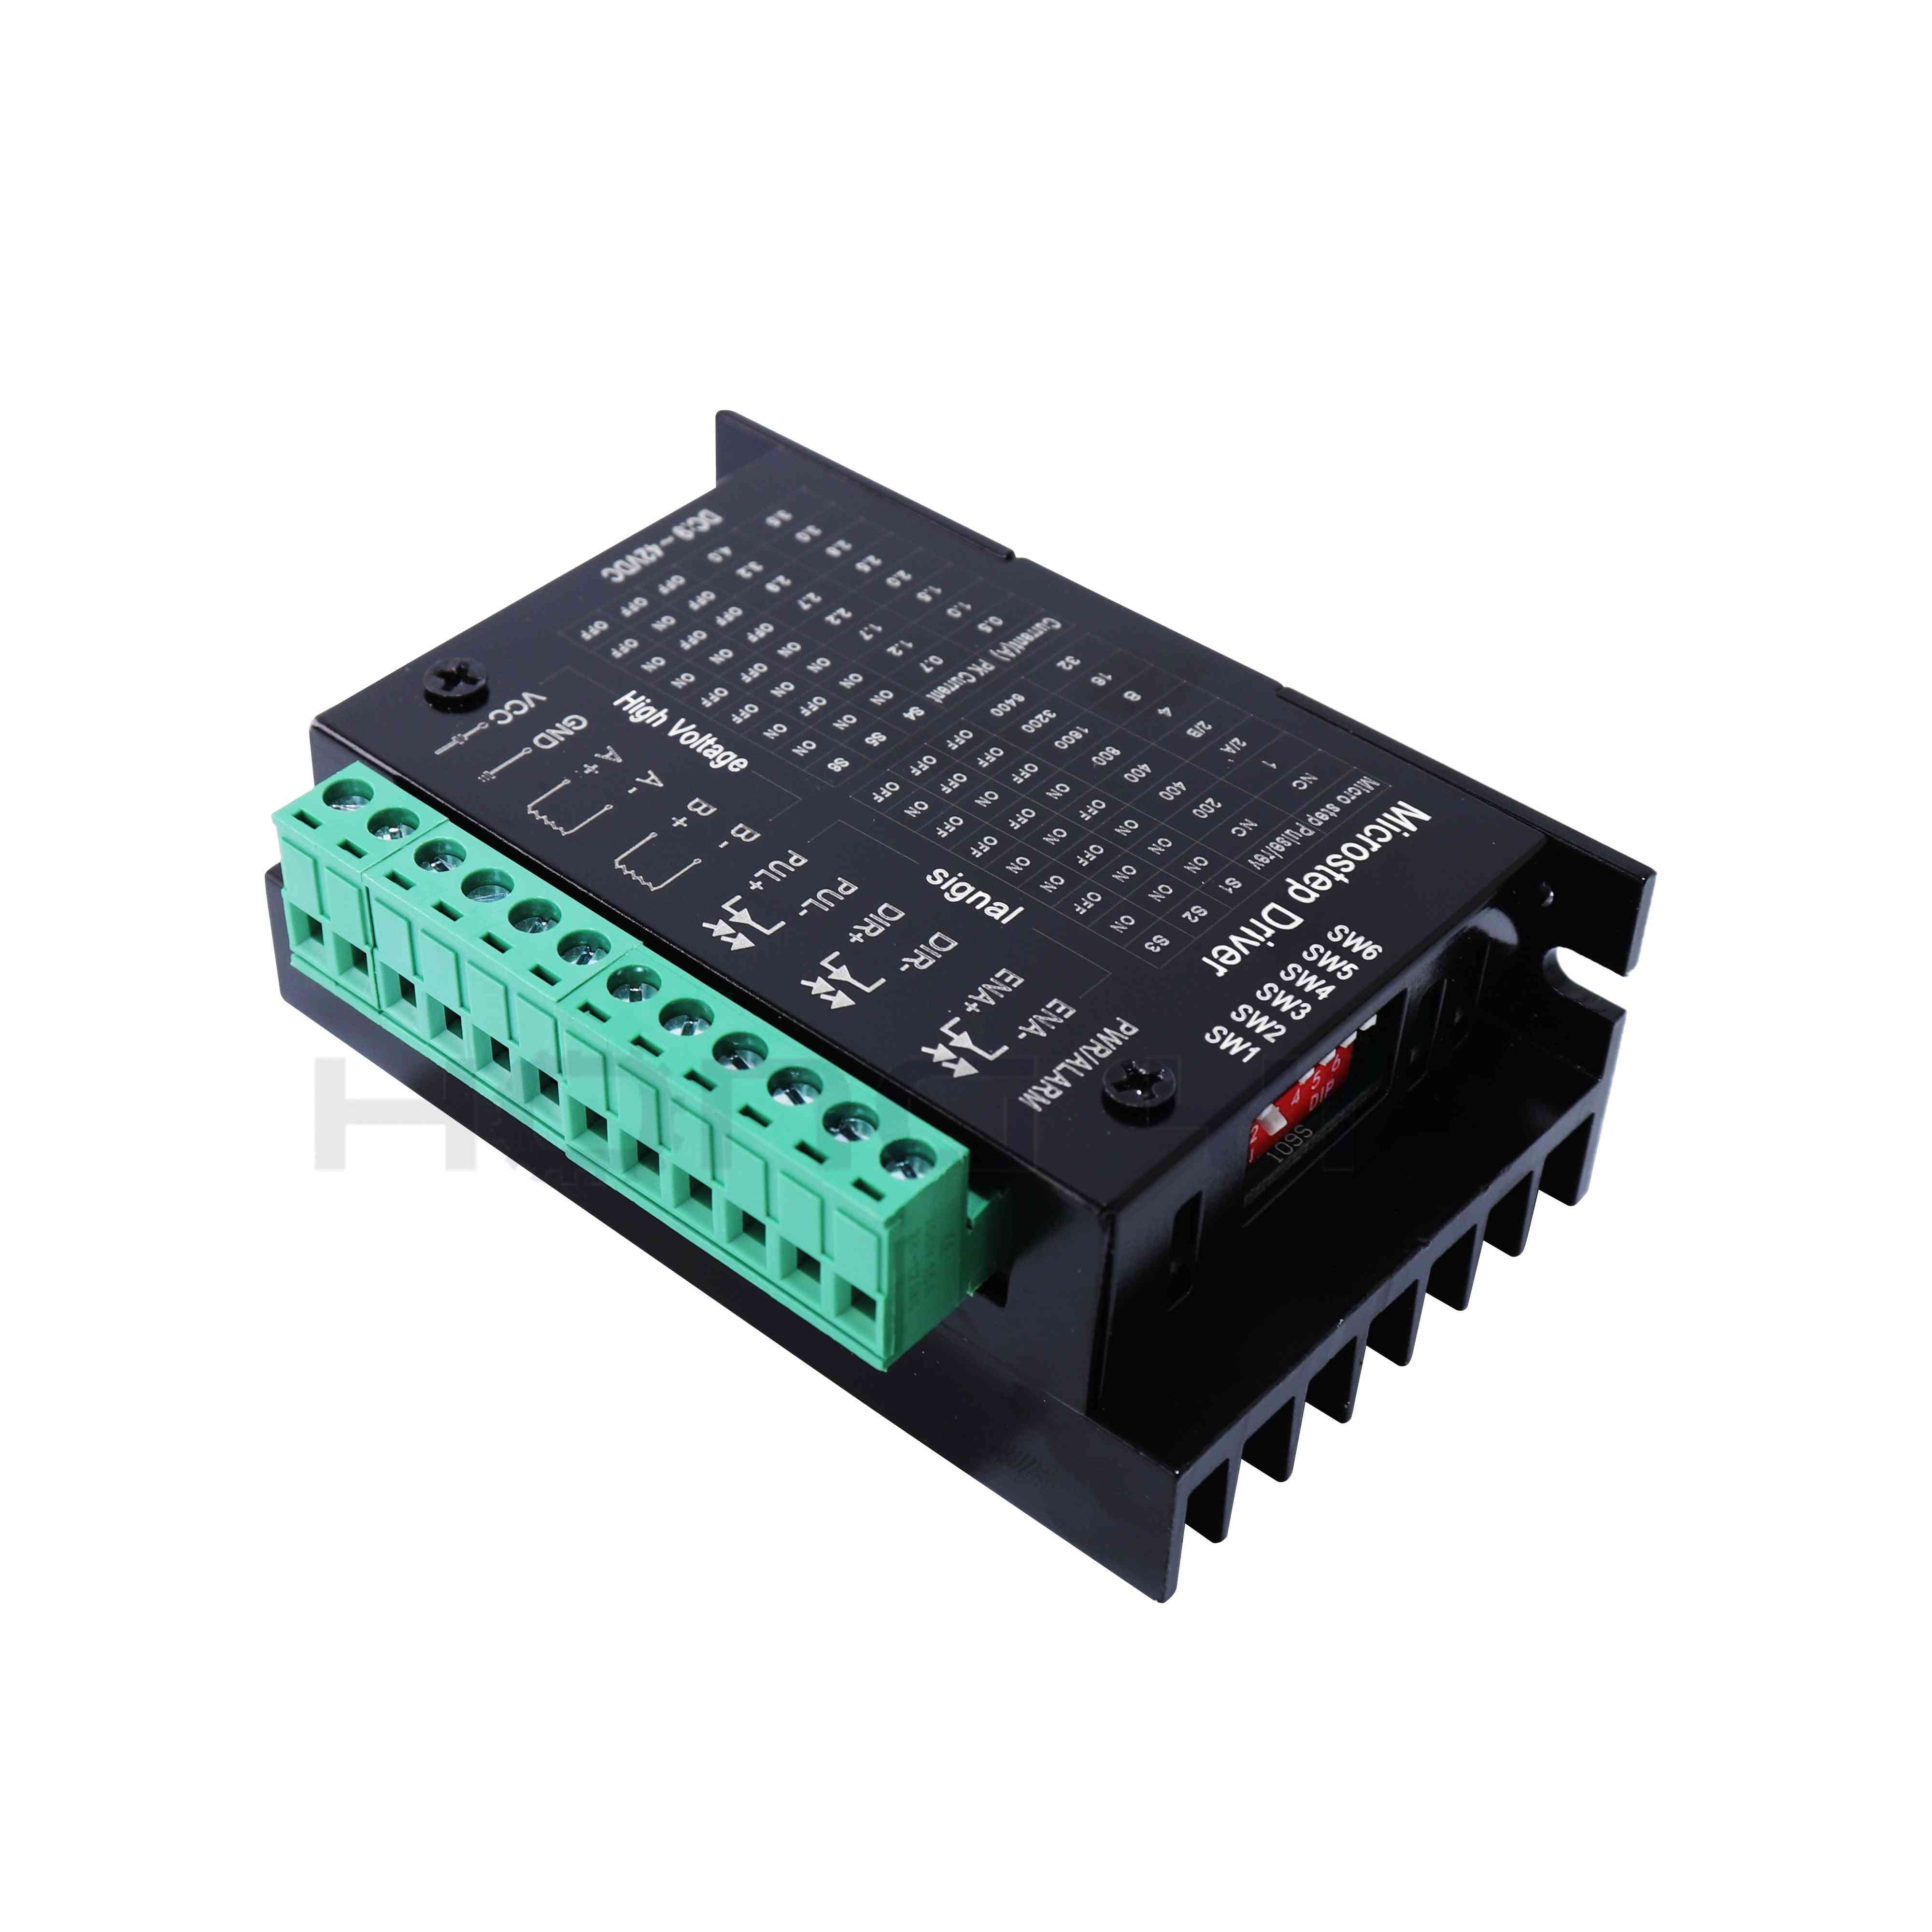 Controlador de motor paso a paso de actualización tb6600 - s109aftg para motor nema23, controlador de enrutador cnc de 2 fases 4a para impresora 3d - tb6600 x1pcs